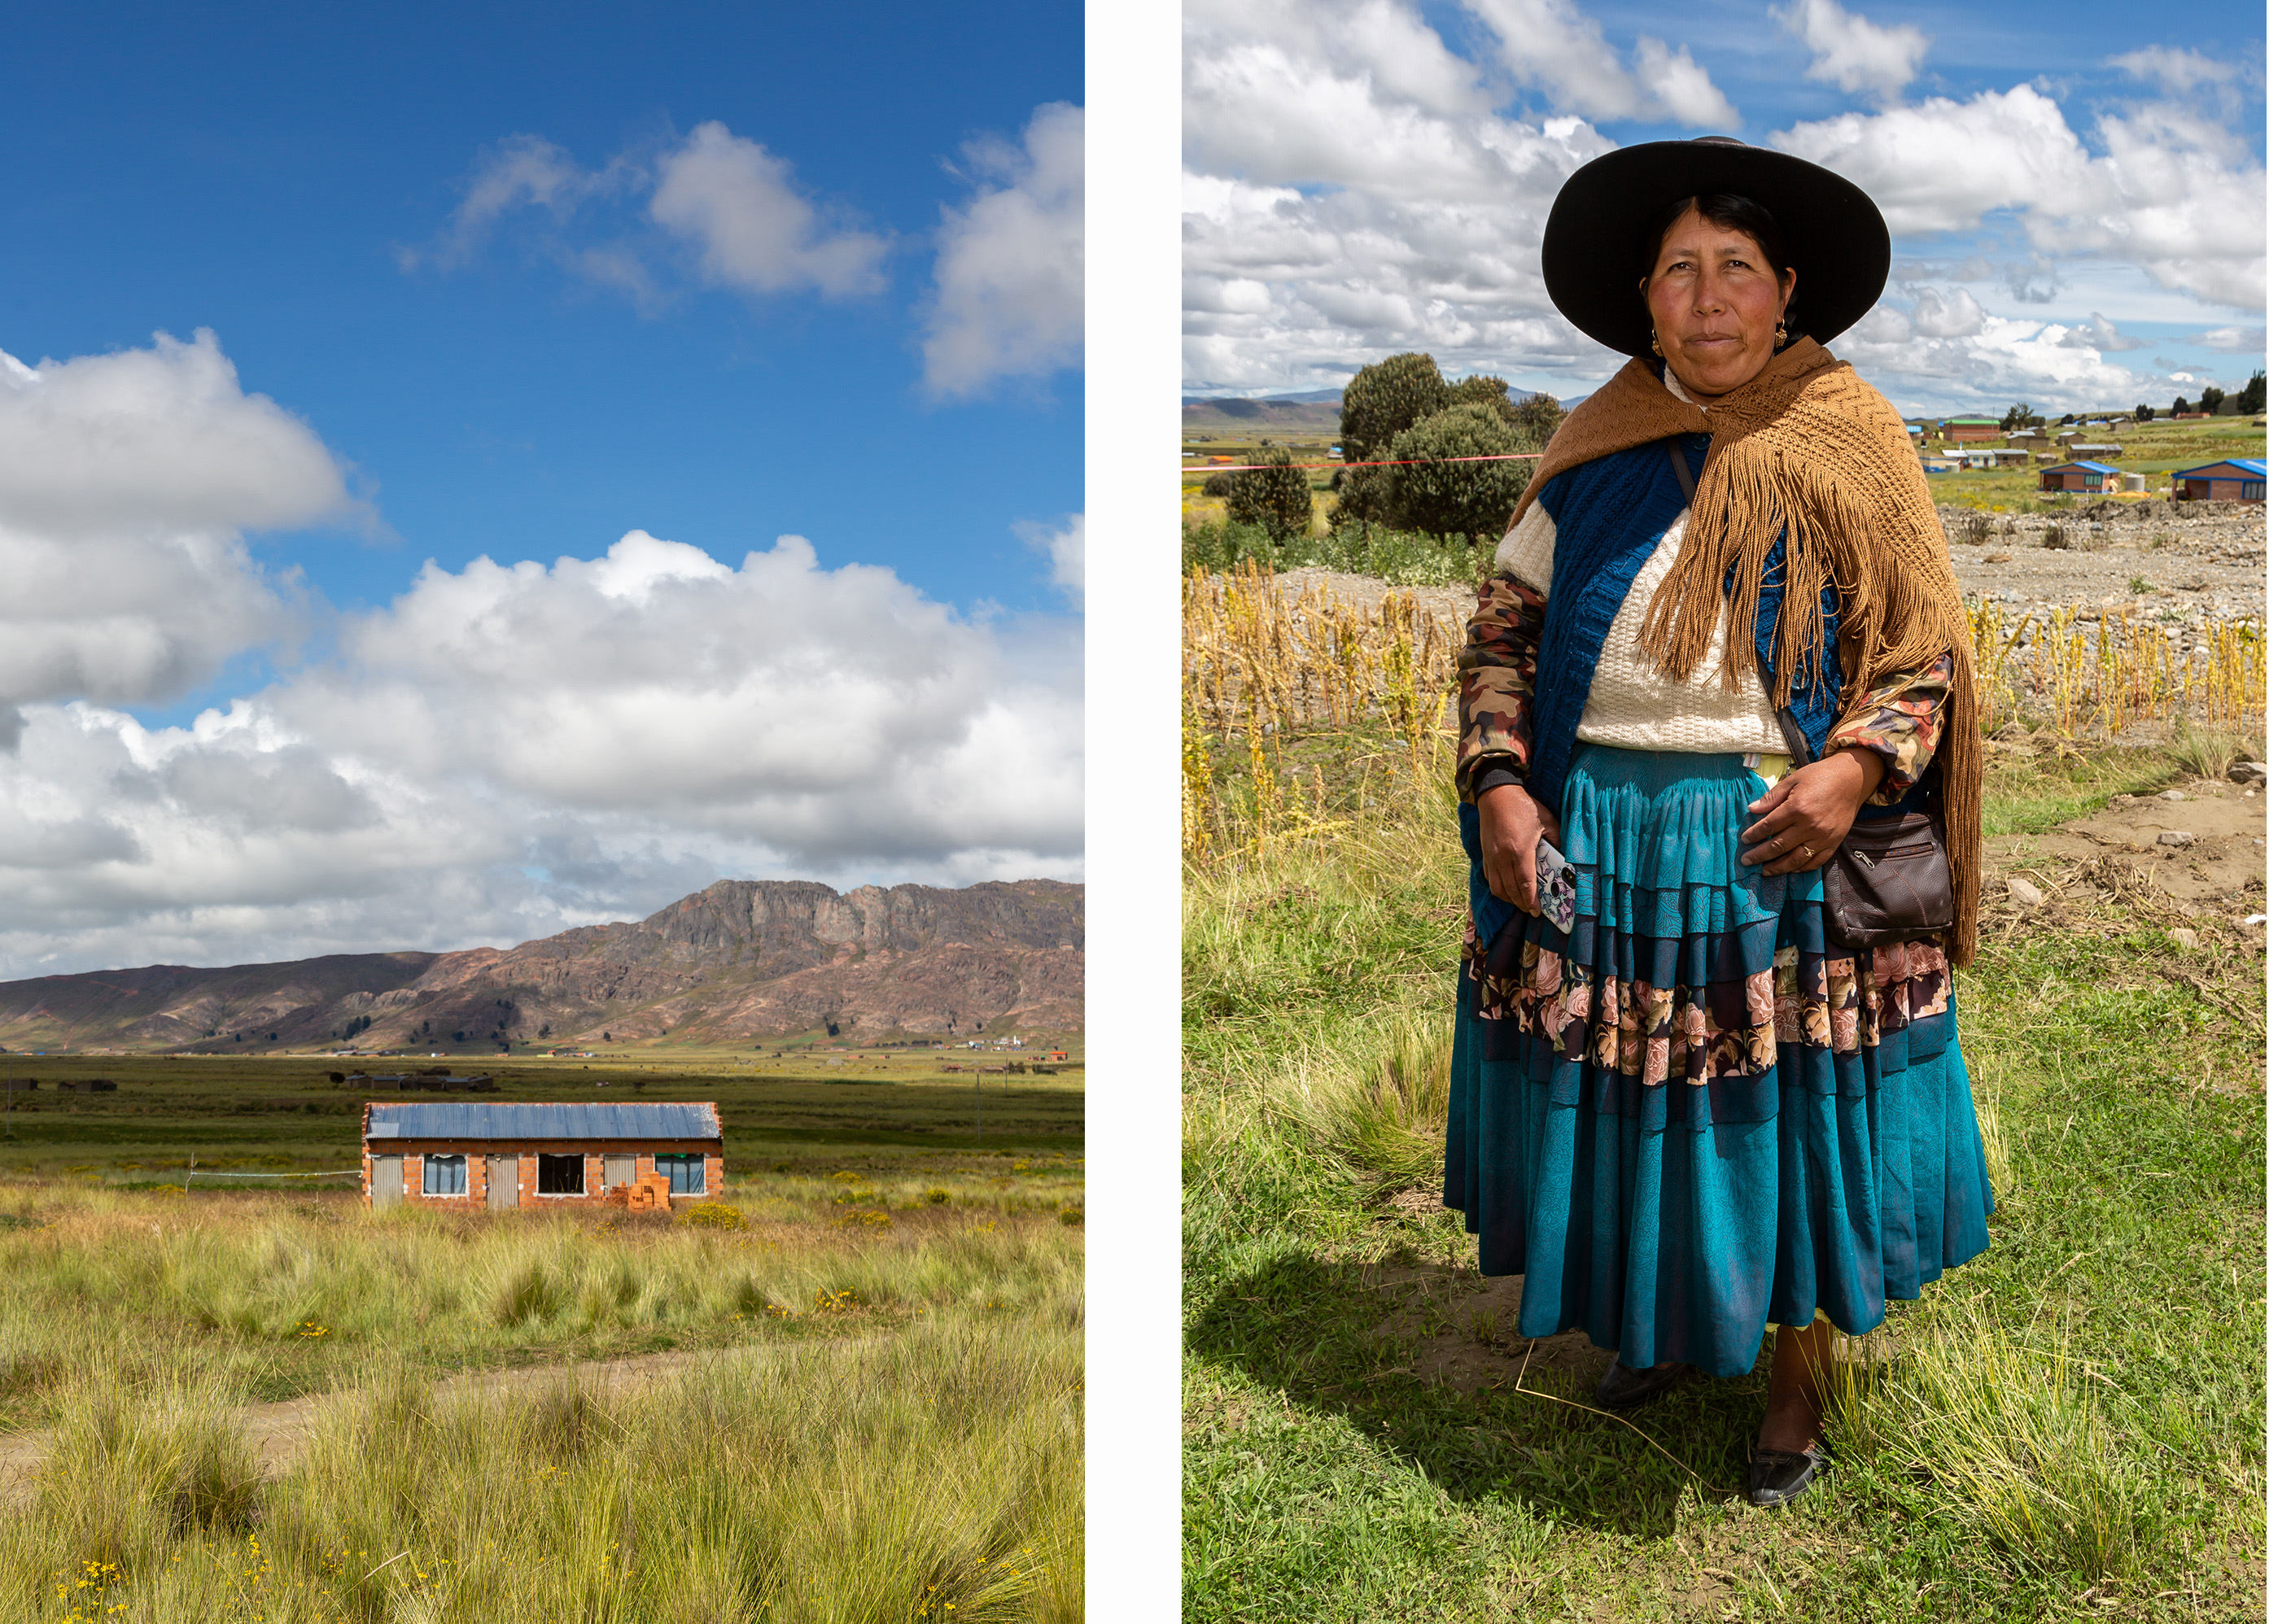 Duas imagens: a da esquerda mostra um campo e uma casa. A da direita uma camponesa boliviana